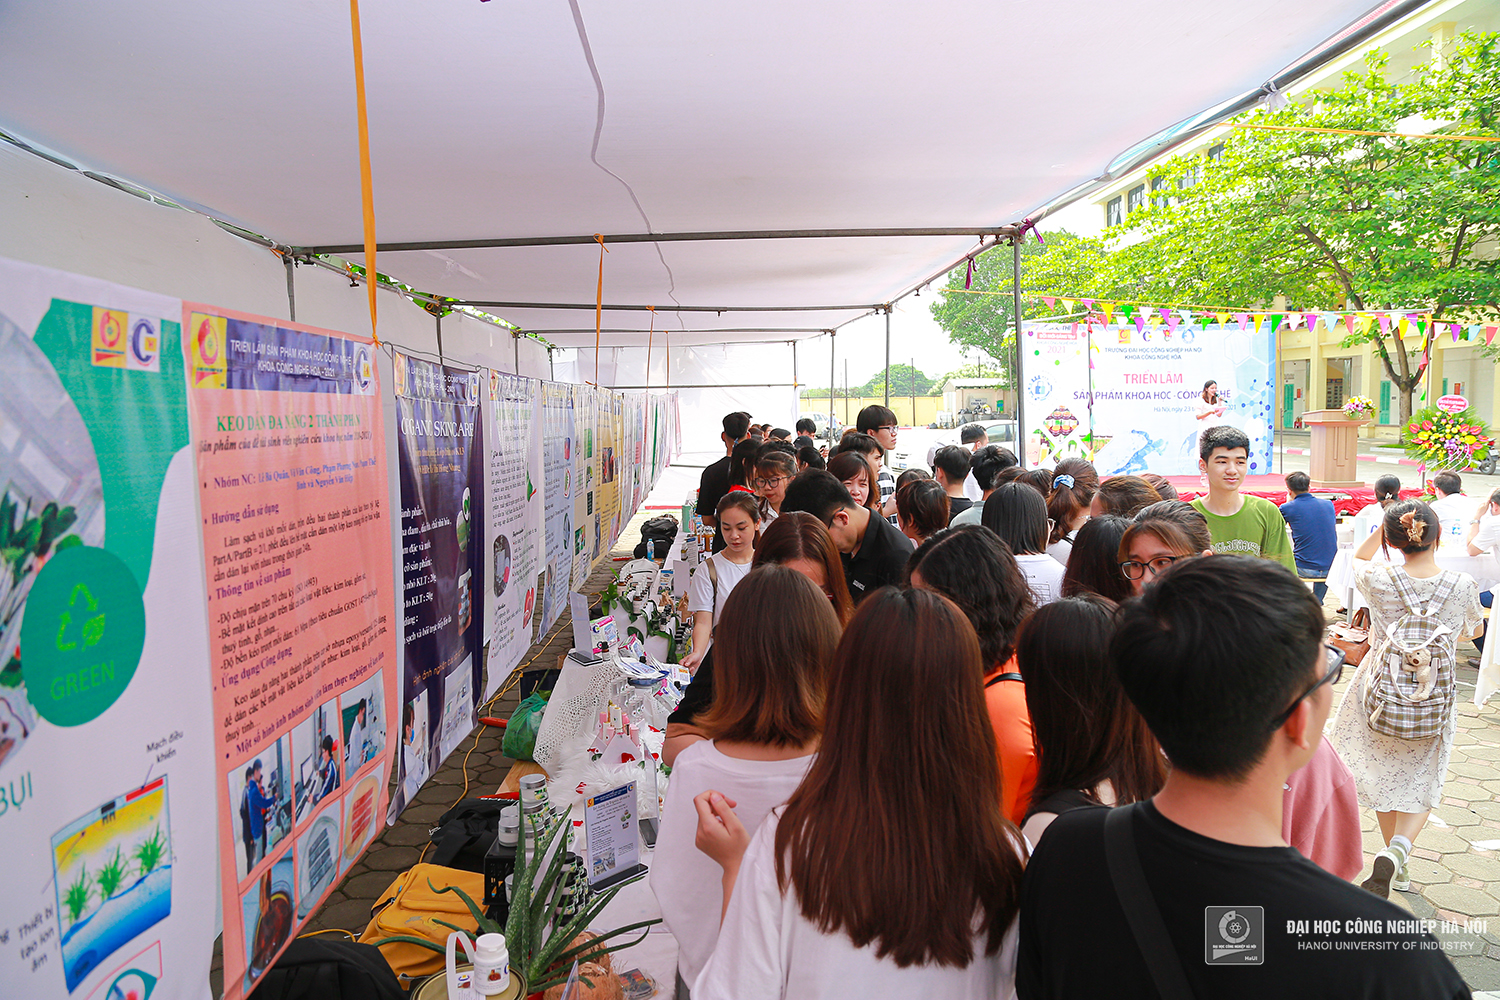 Khoa Công nghệ Hóa tổ chức Hội chợ triển lãm các sản phẩm khoa học công nghệ